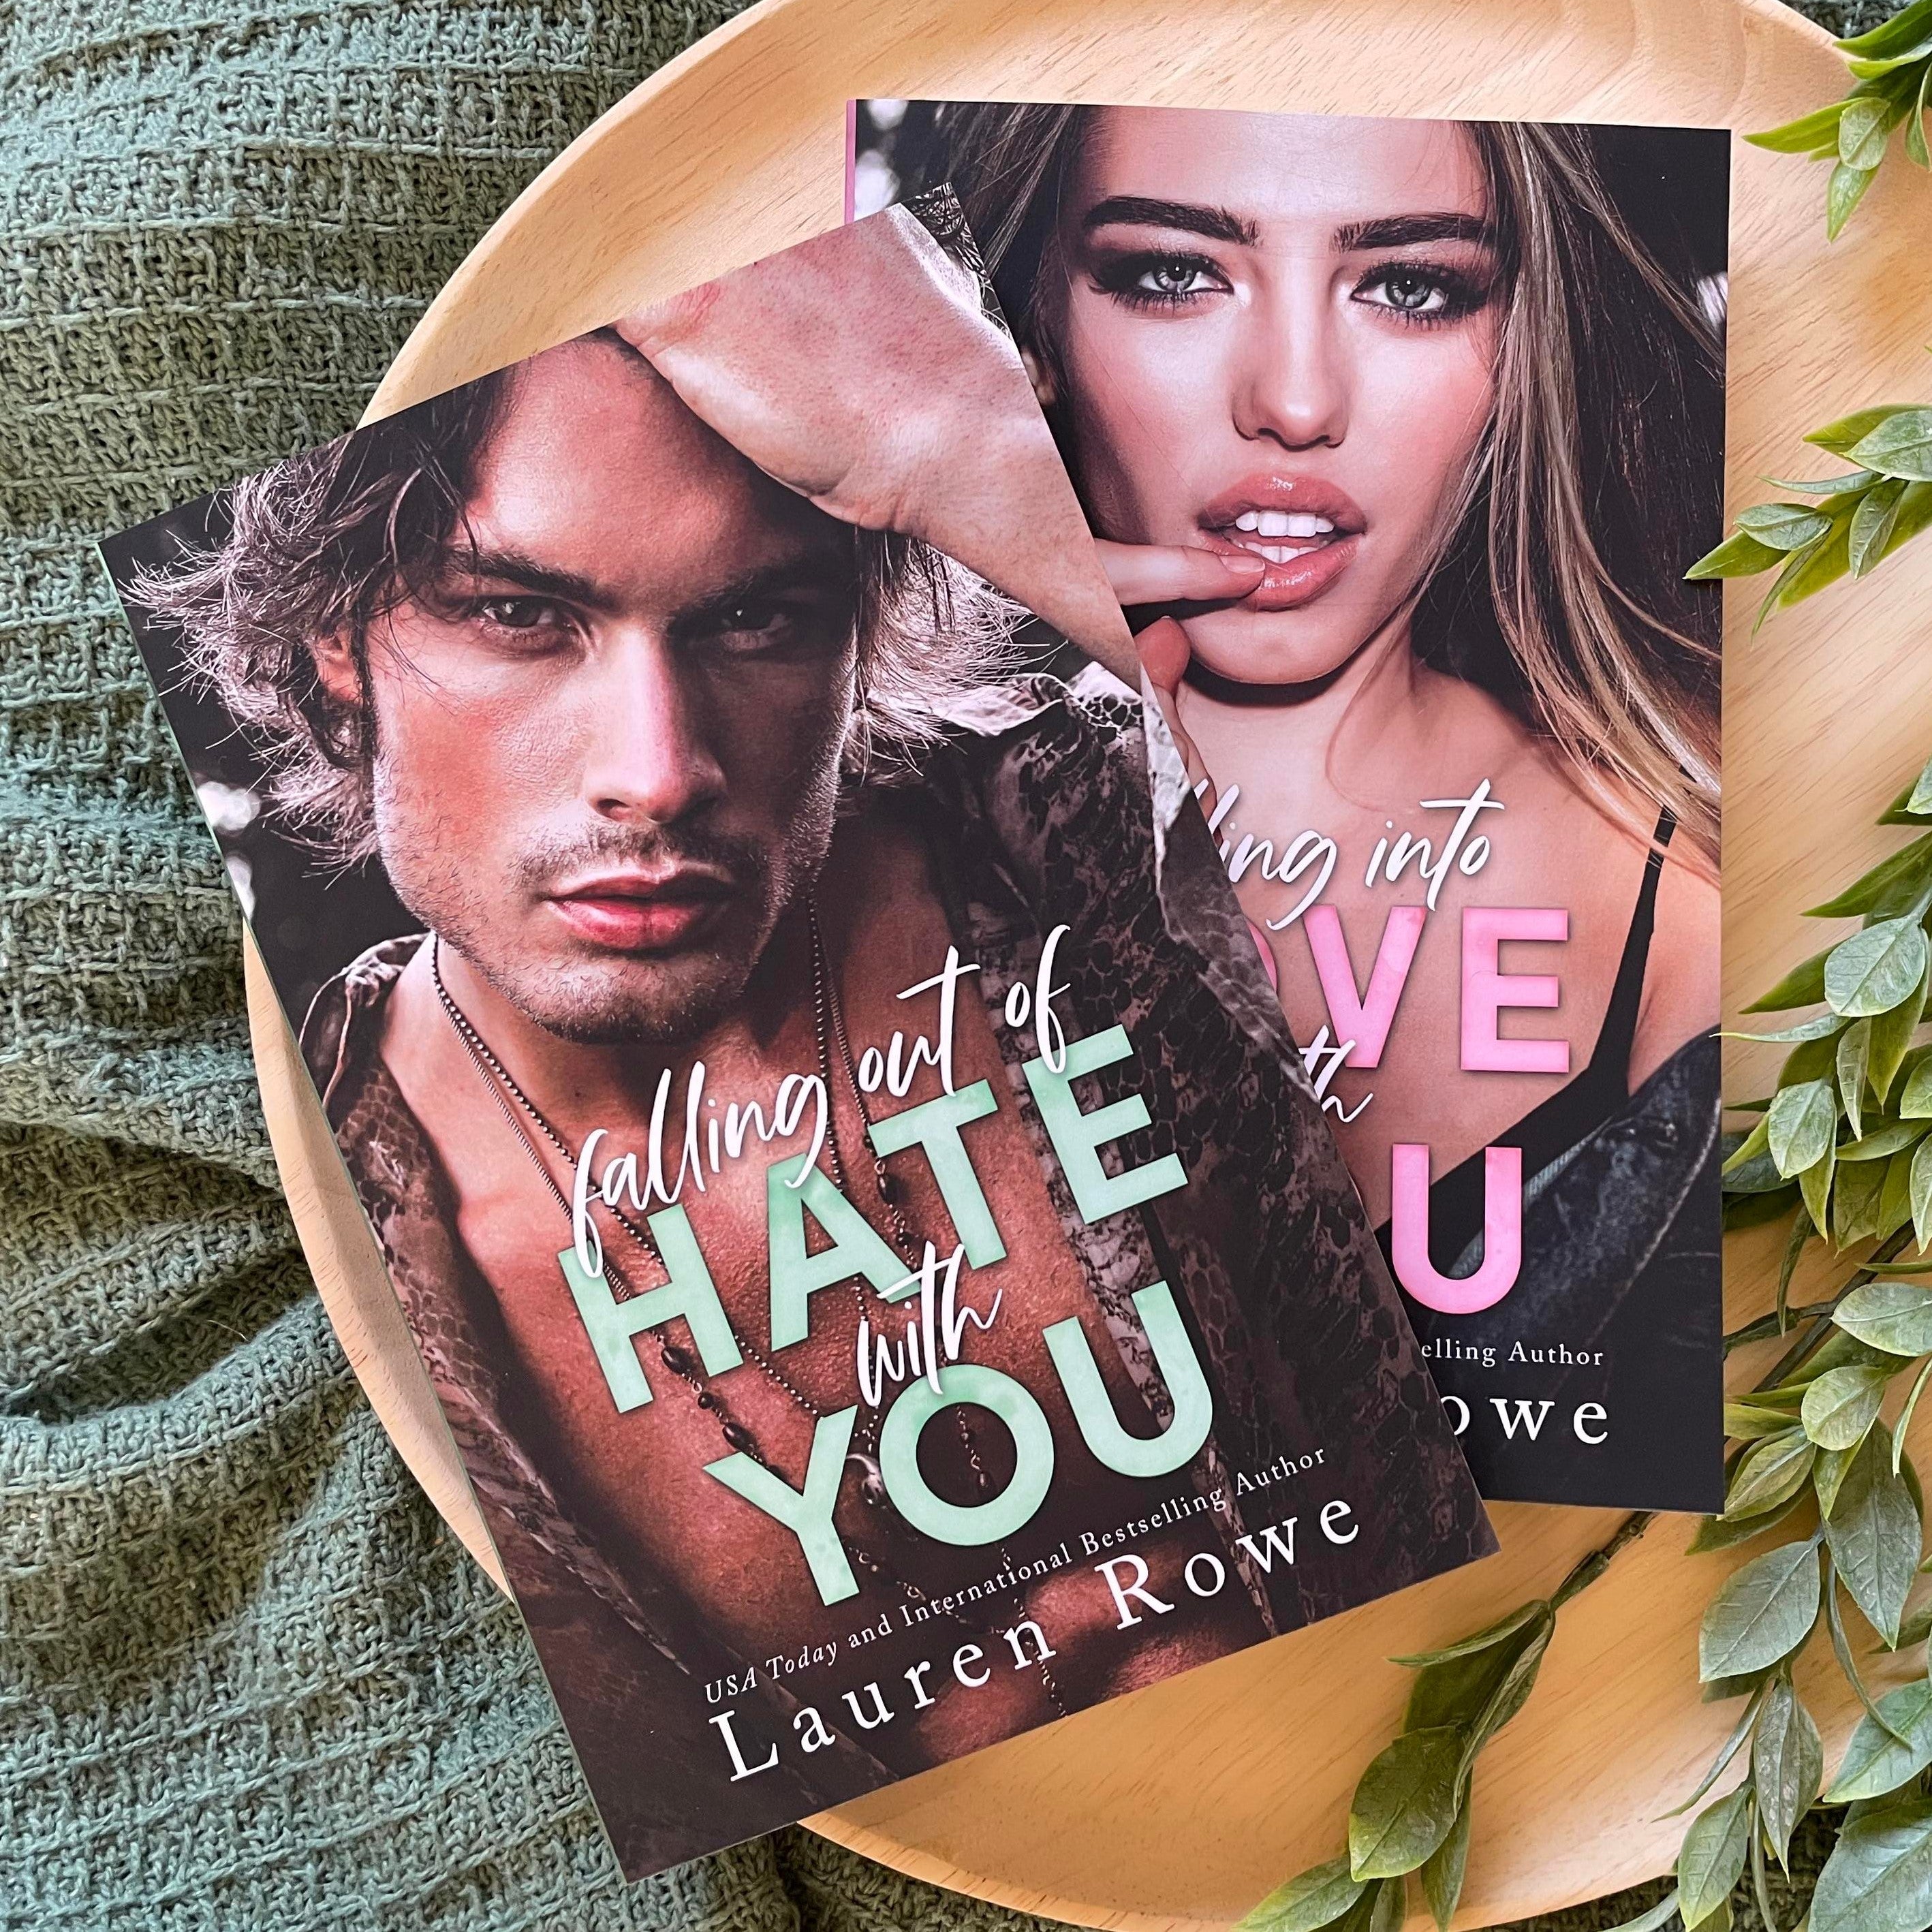 The Hate-Love Duet by Lauren Rowe